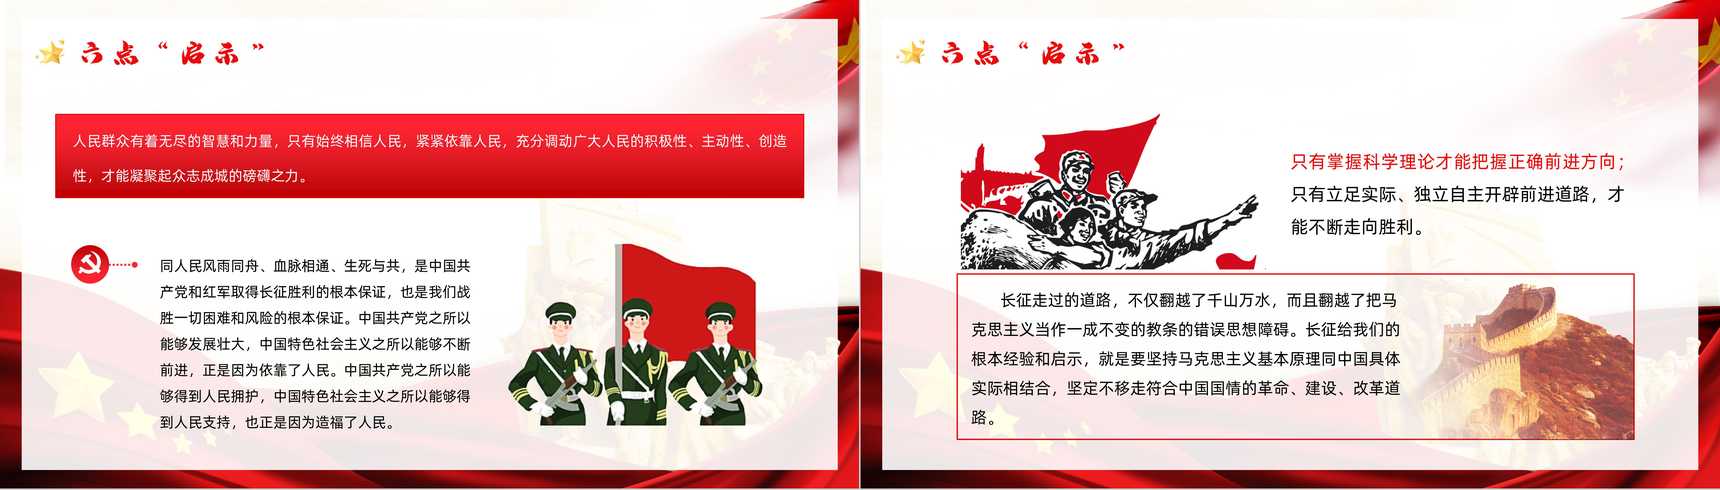 党政风庆祝长征胜利纪念日宣传活动党员干部爱国教育培训PPT模板-12